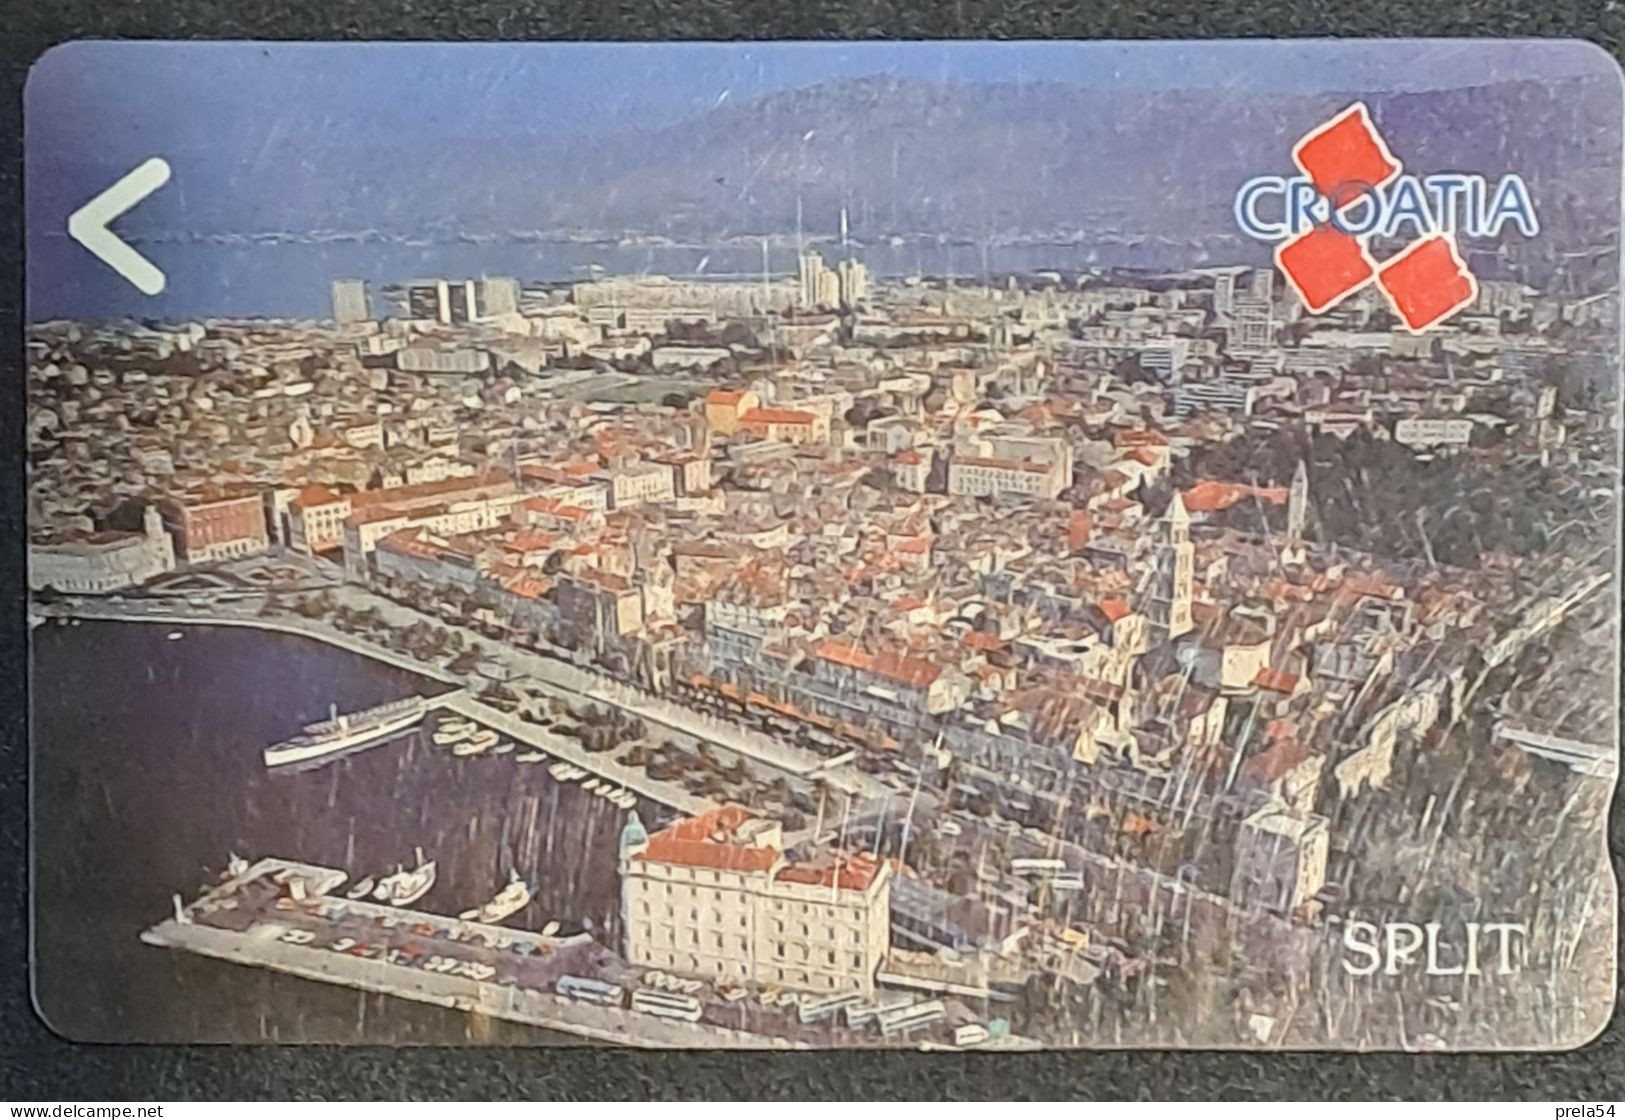 Croatia  - SPLIT Magnetic Card Used - Kroatien